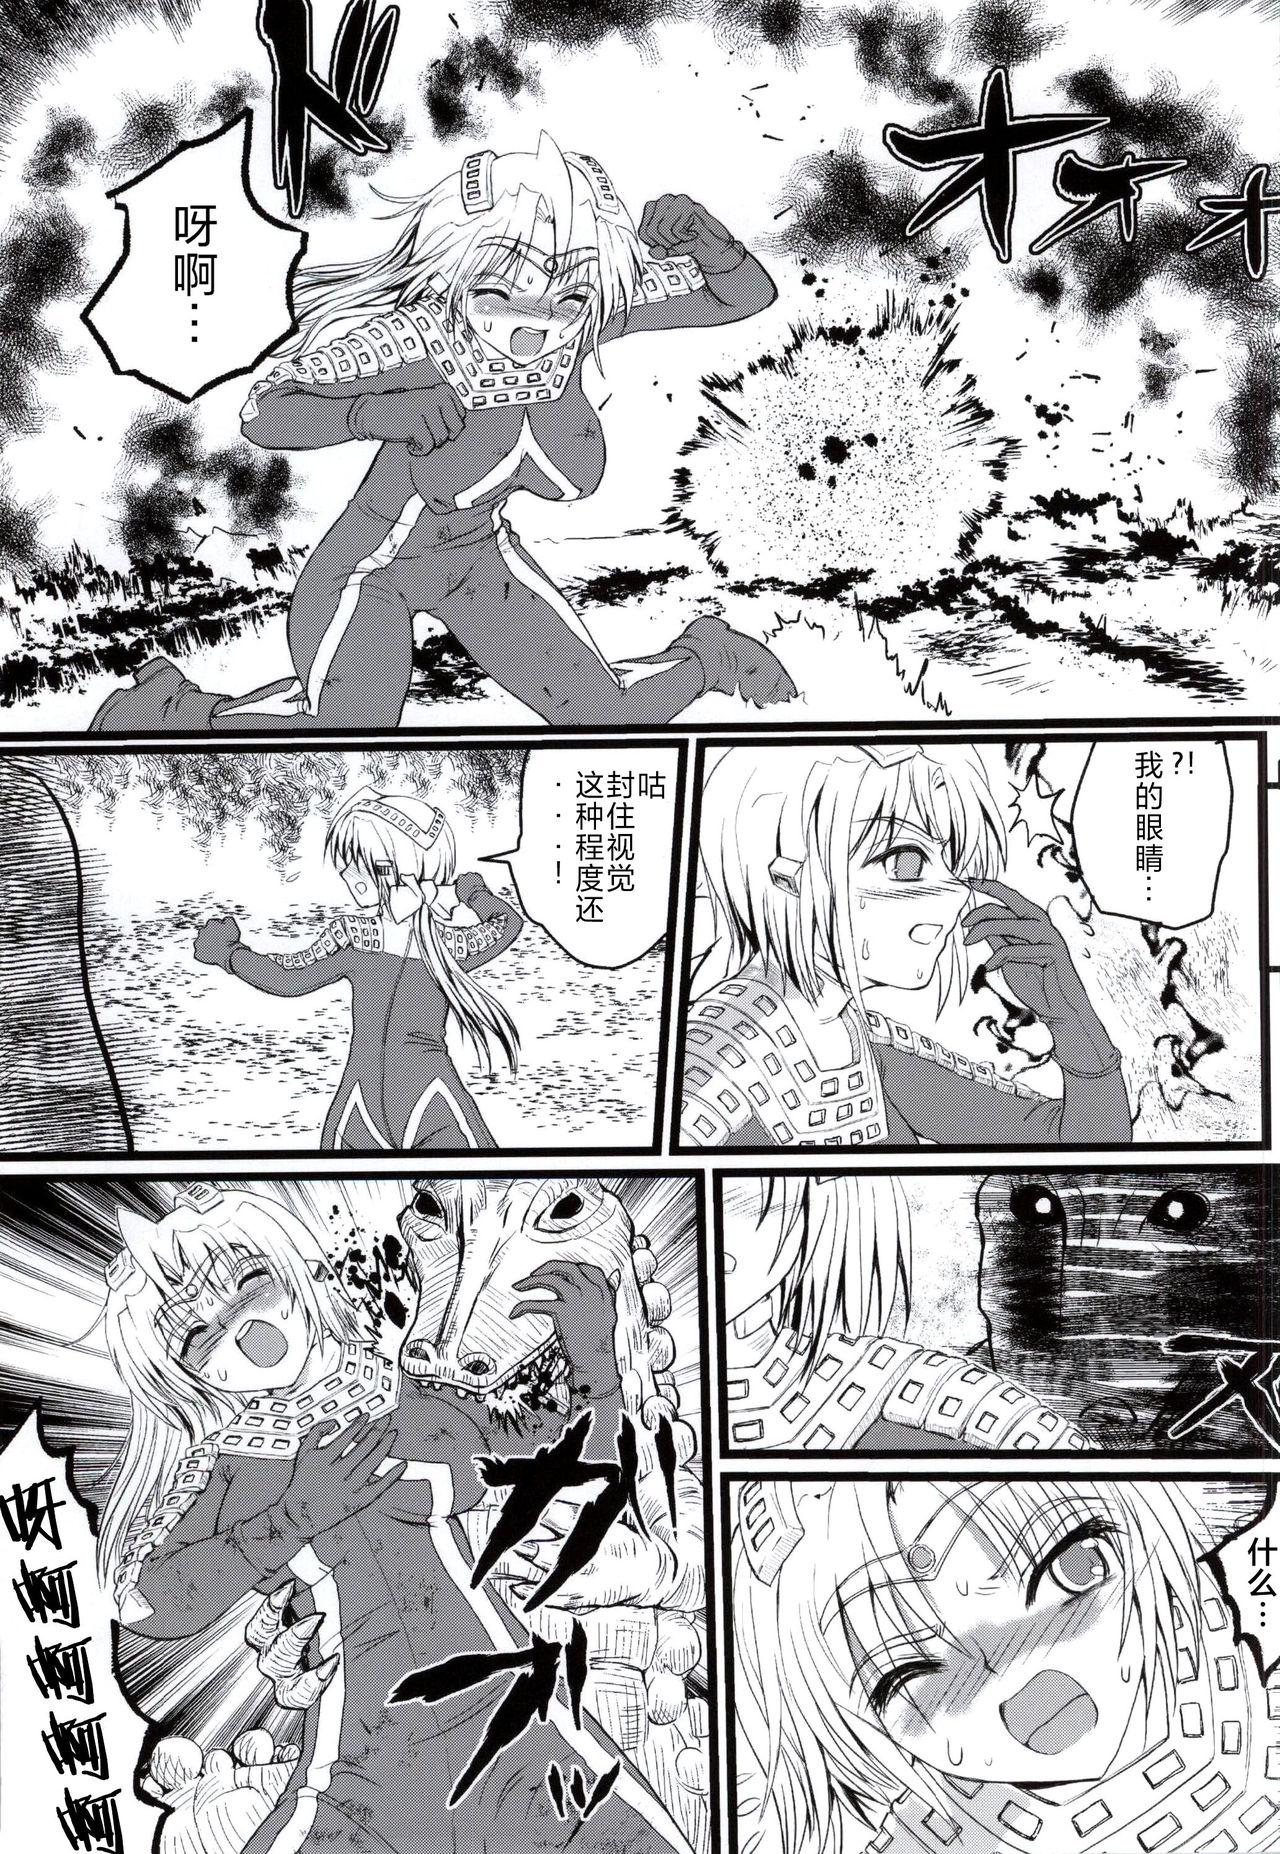 Tittyfuck Ultra Nanako Zettaizetsumei! Vol. 3 - Ultraman Shy - Page 4